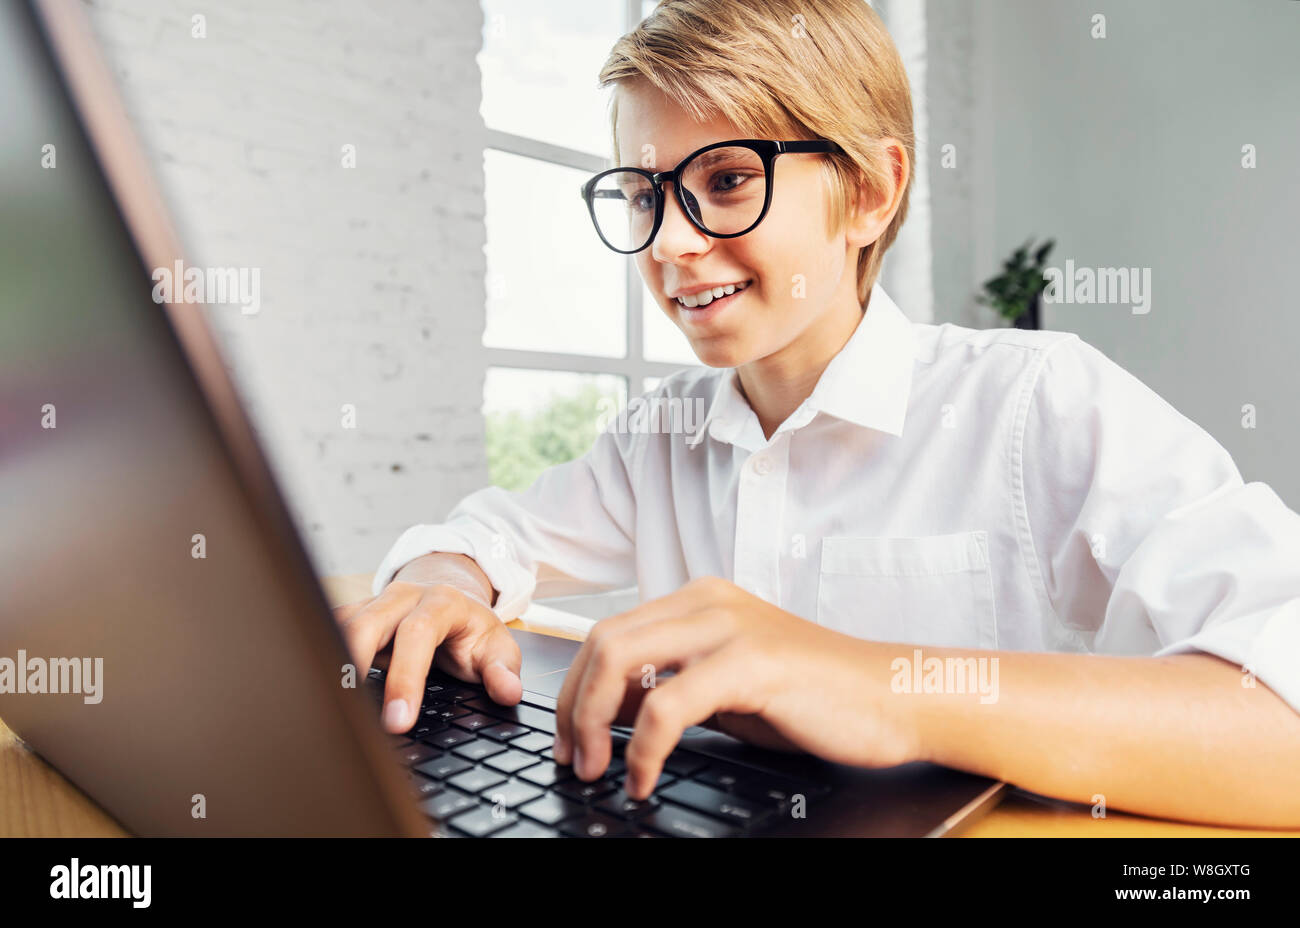 Smiling boy dans les verres using laptop Banque D'Images